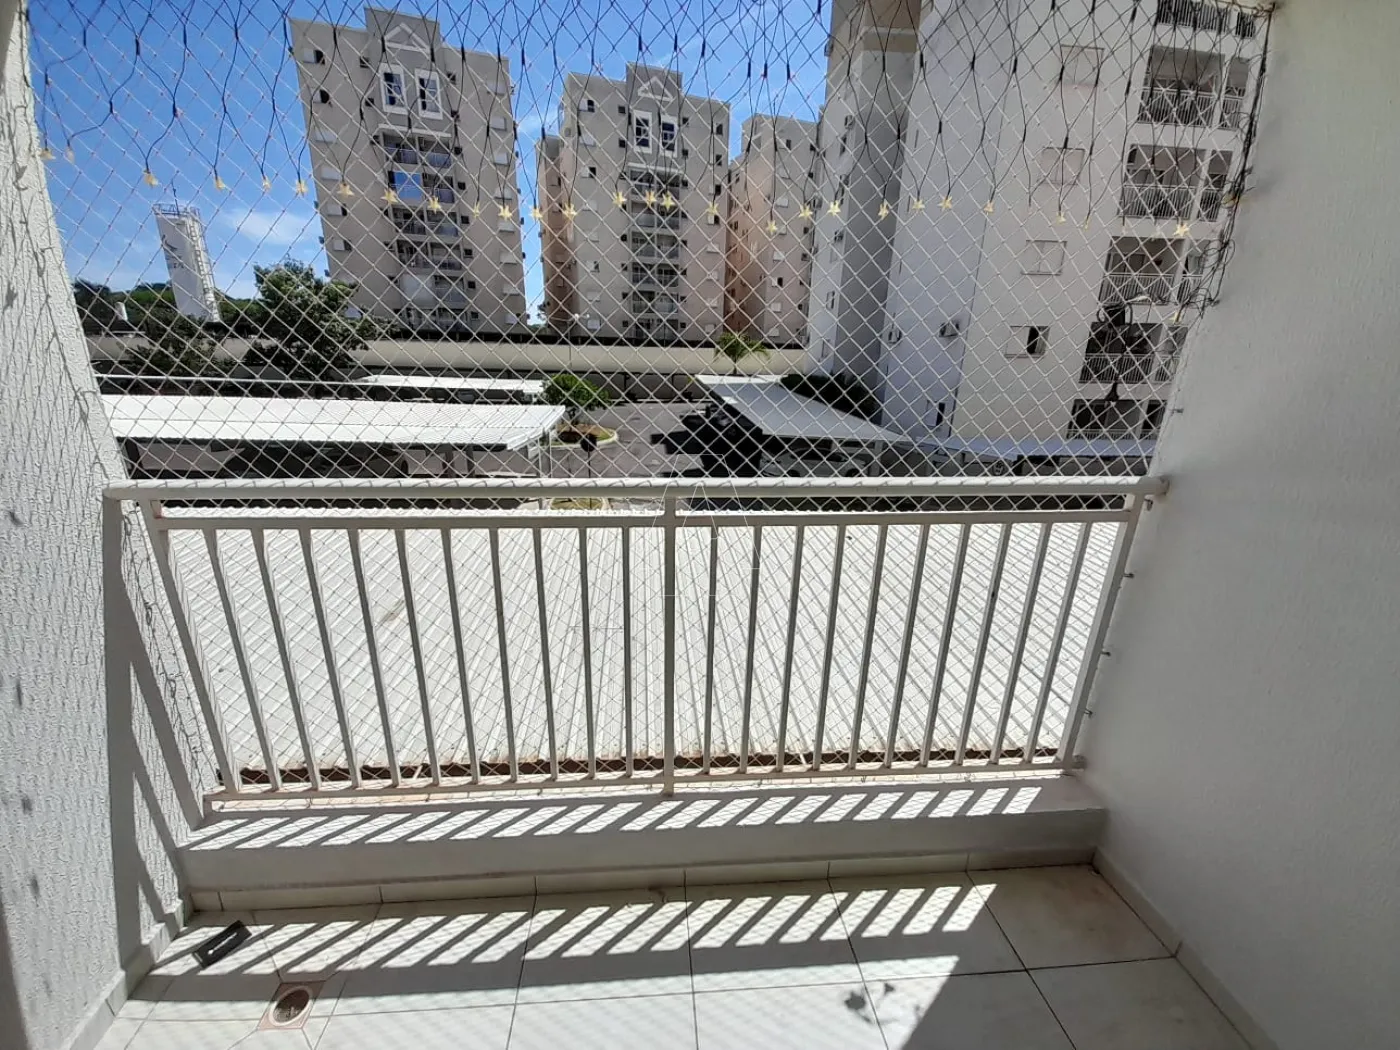 Alugar Apartamento / Padrão em Araçatuba R$ 1.000,00 - Foto 10